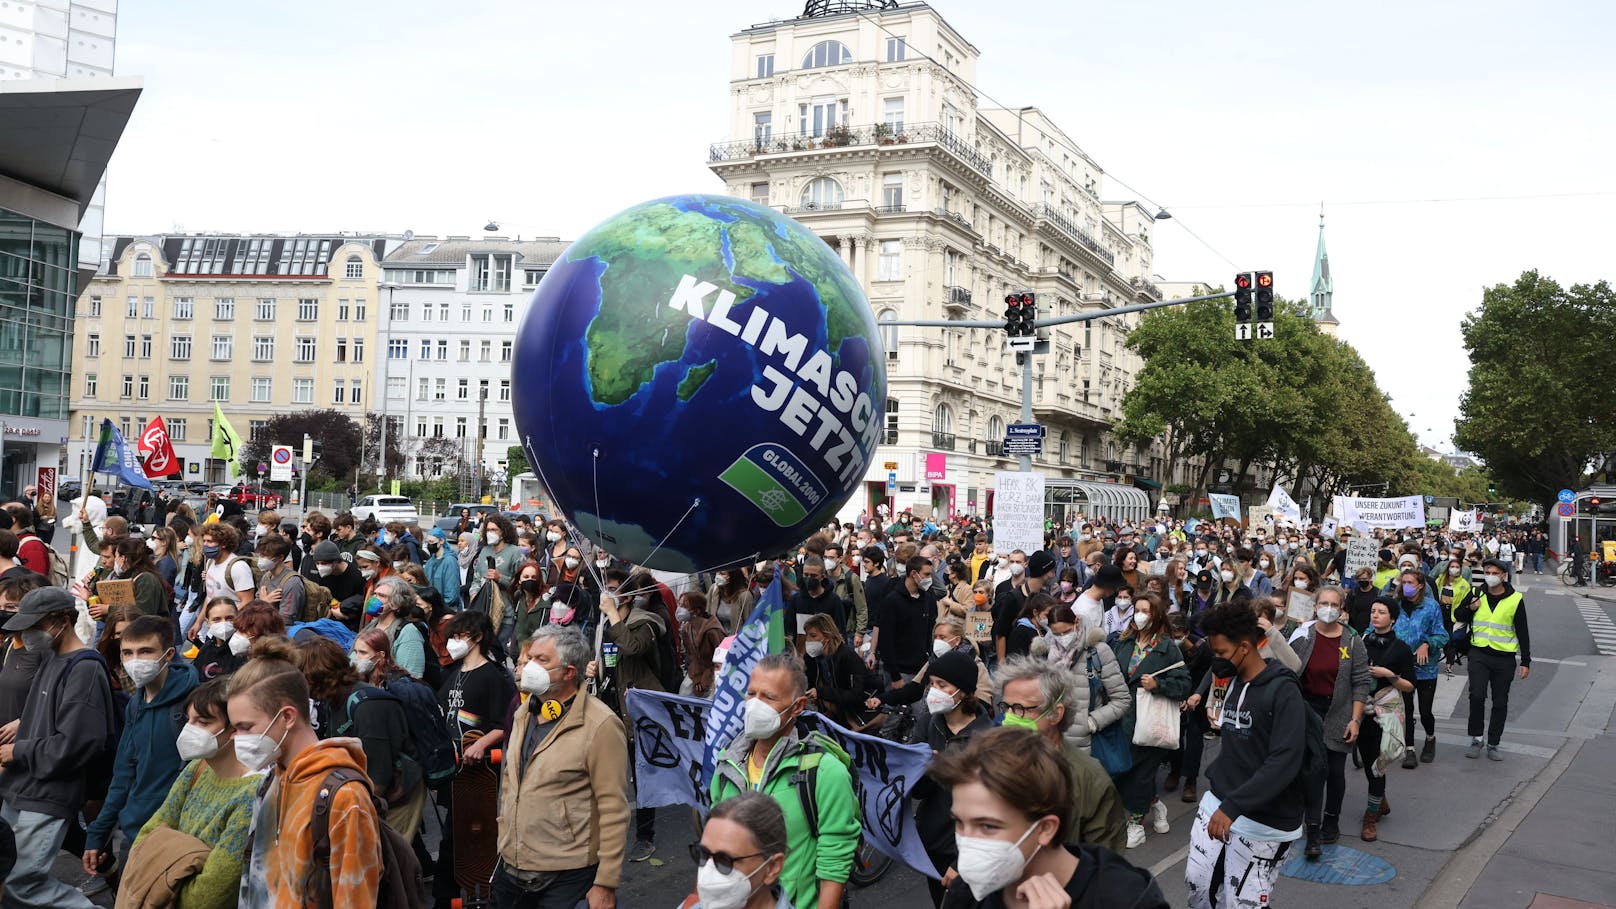 Lehrer wollen "Klimastreiks" am Stundenplan für Schüler